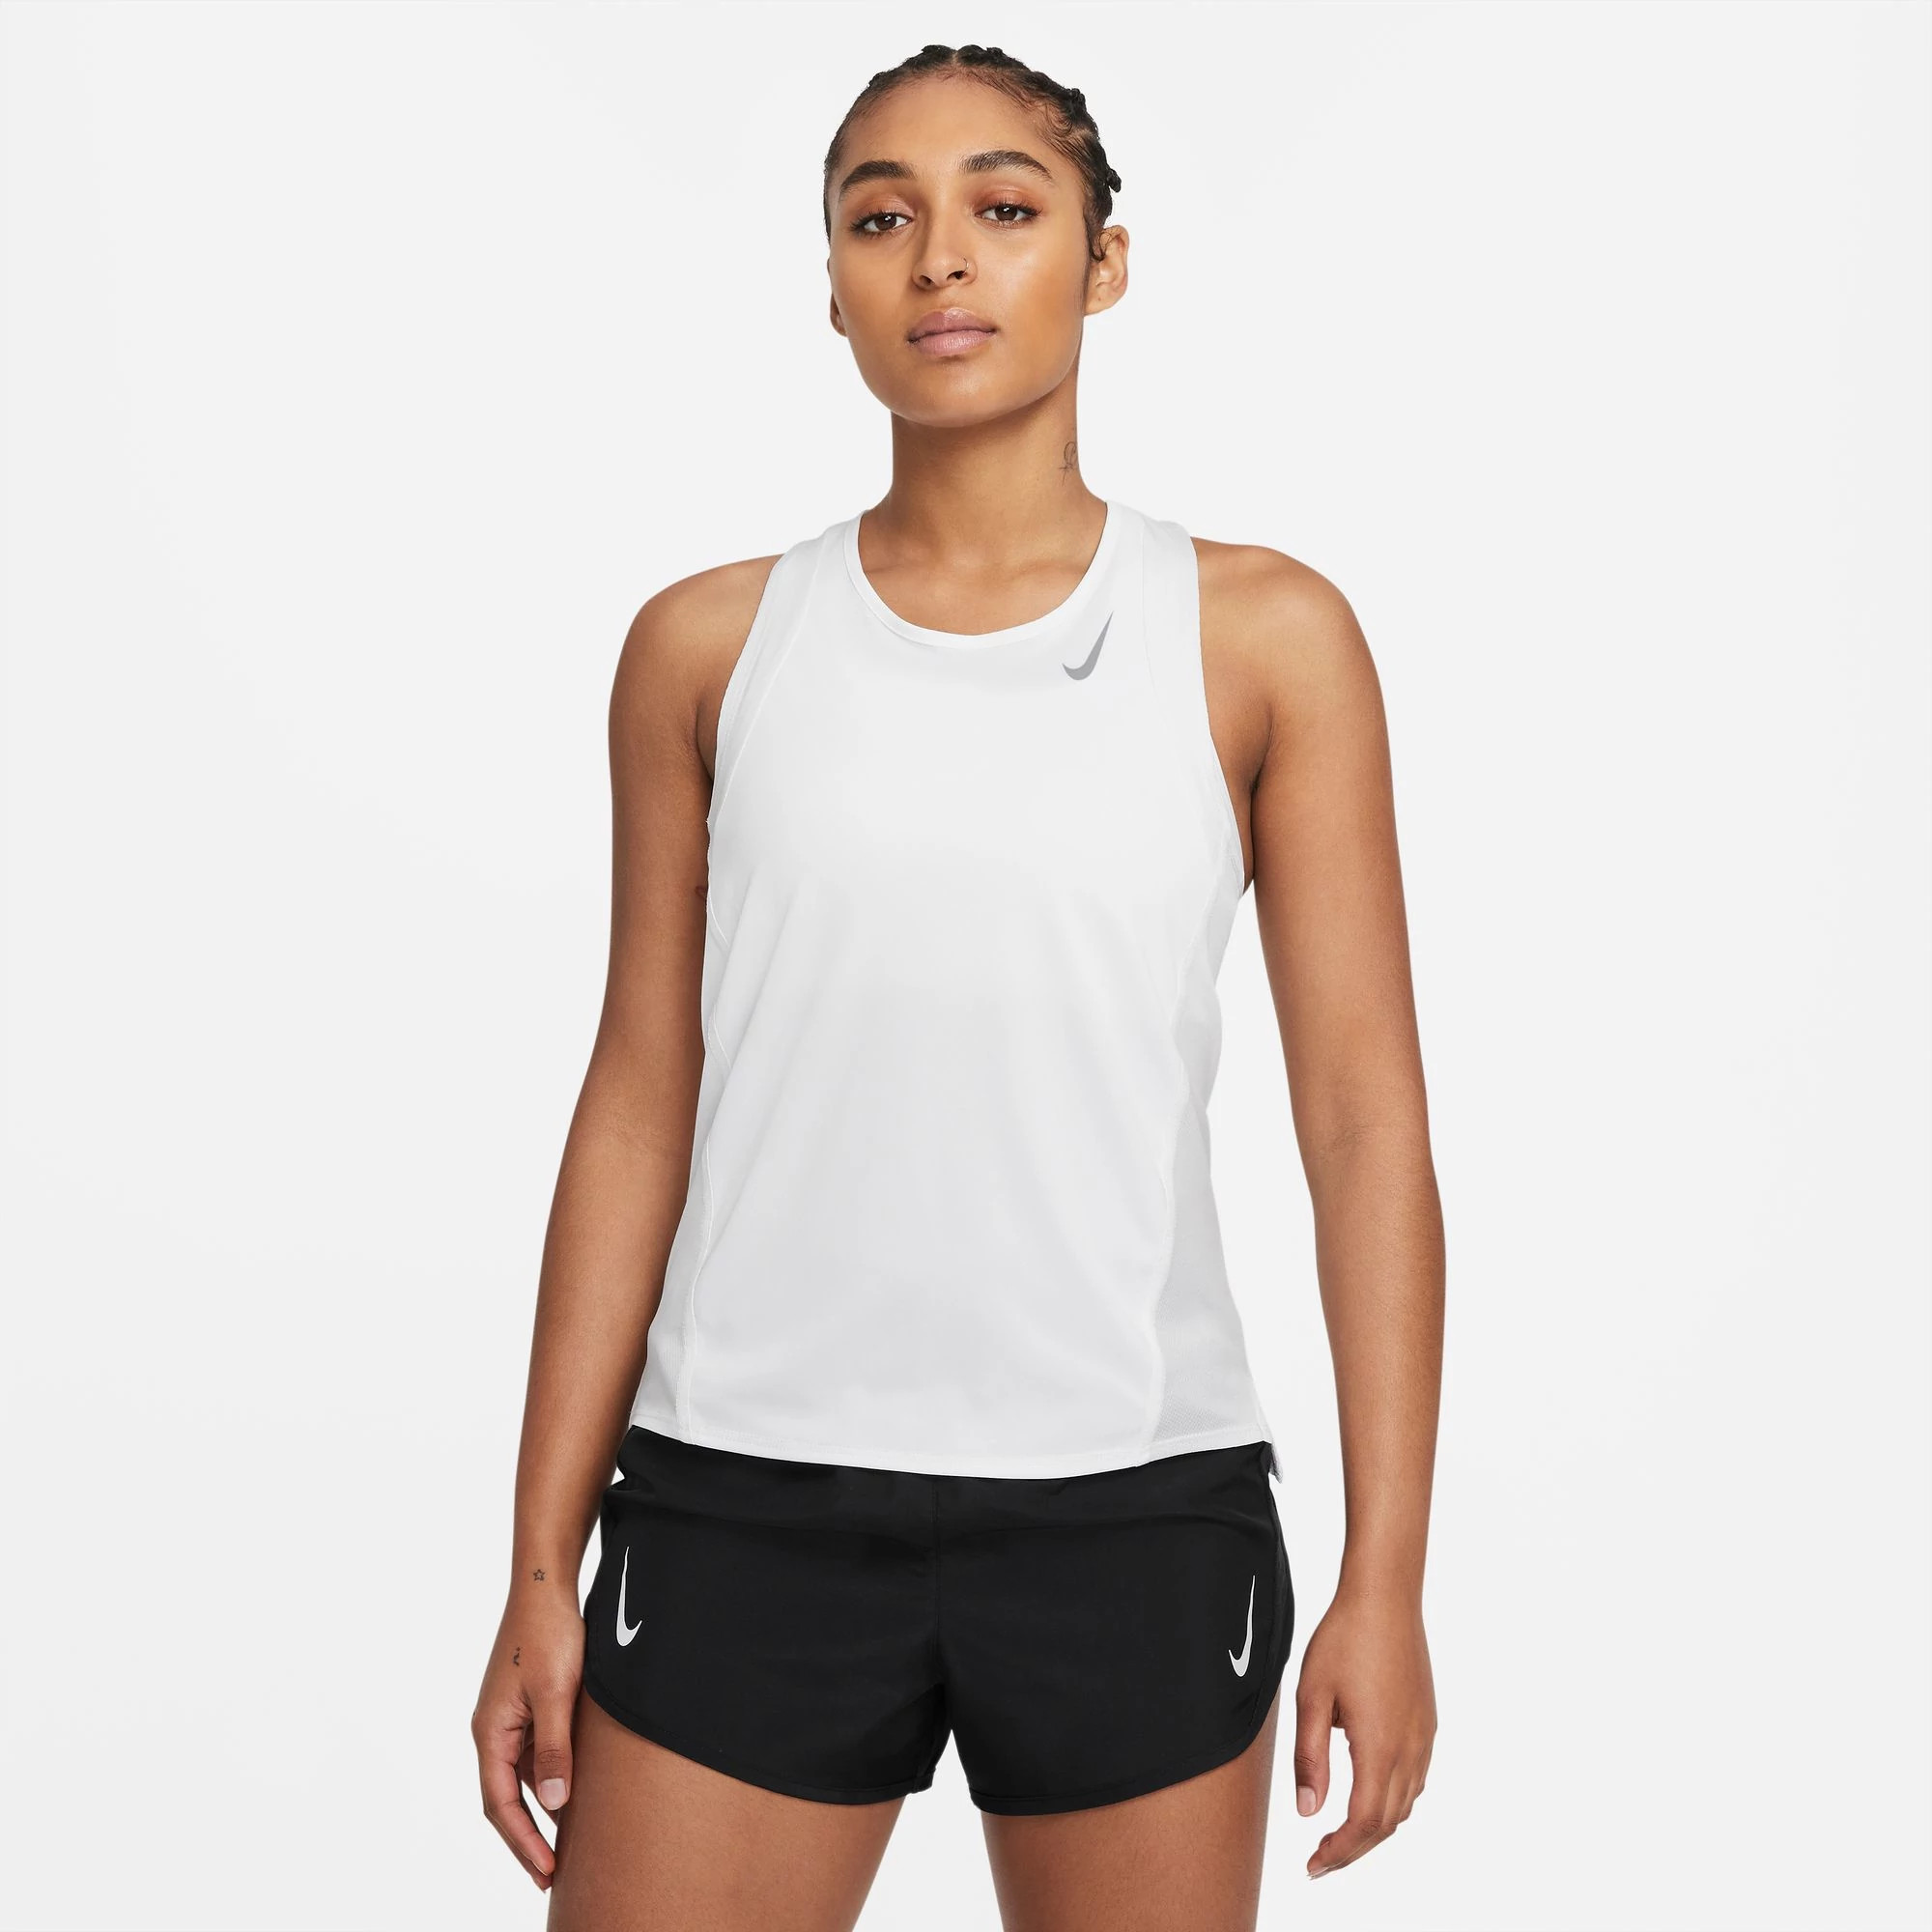 Nike Women's - Running Miler Tank Top - Black